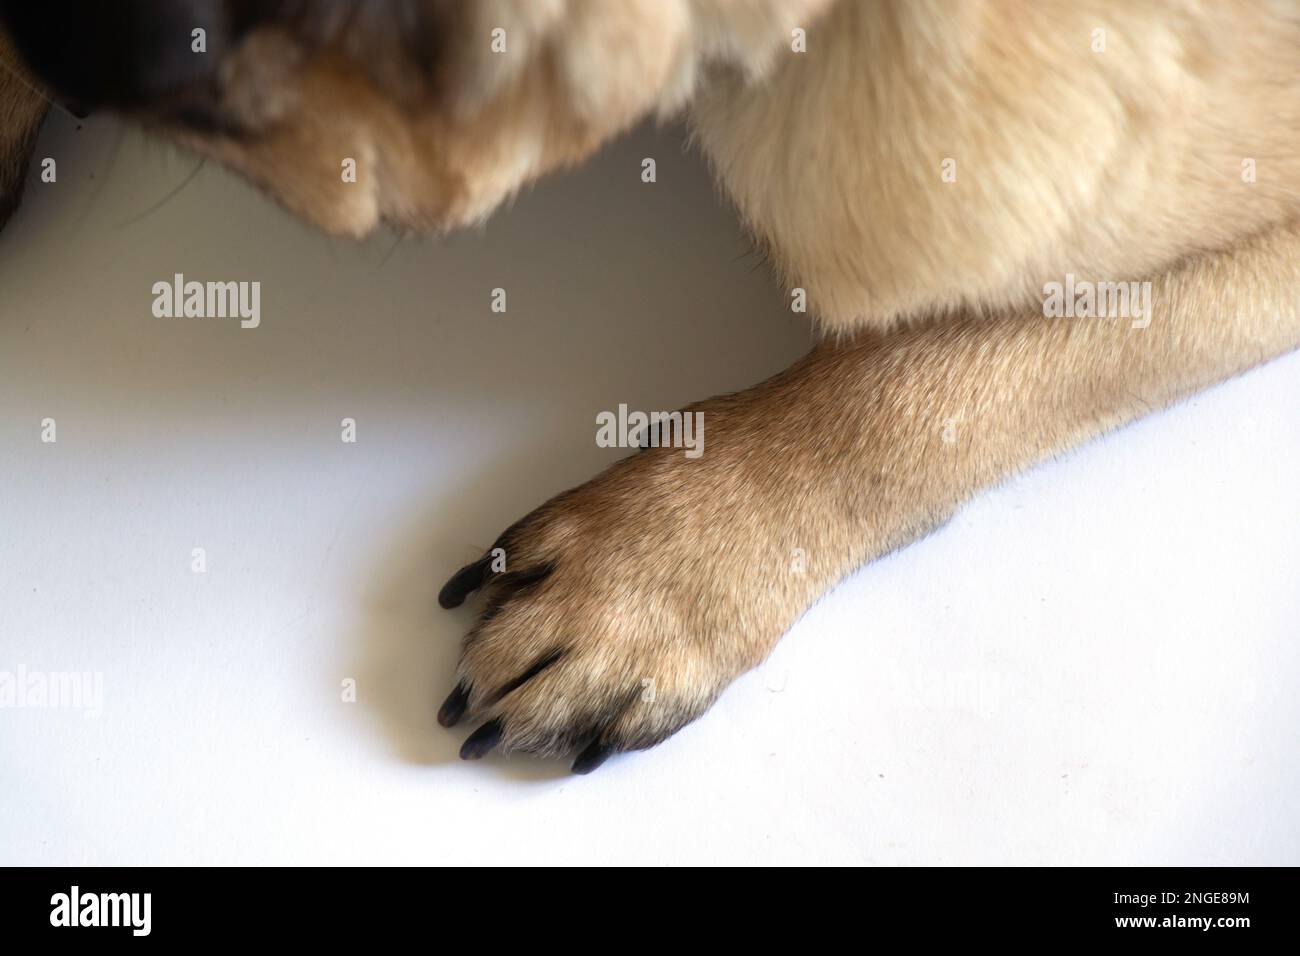 la zampa di cane pug si trova su uno sfondo bianco da vicino Foto Stock